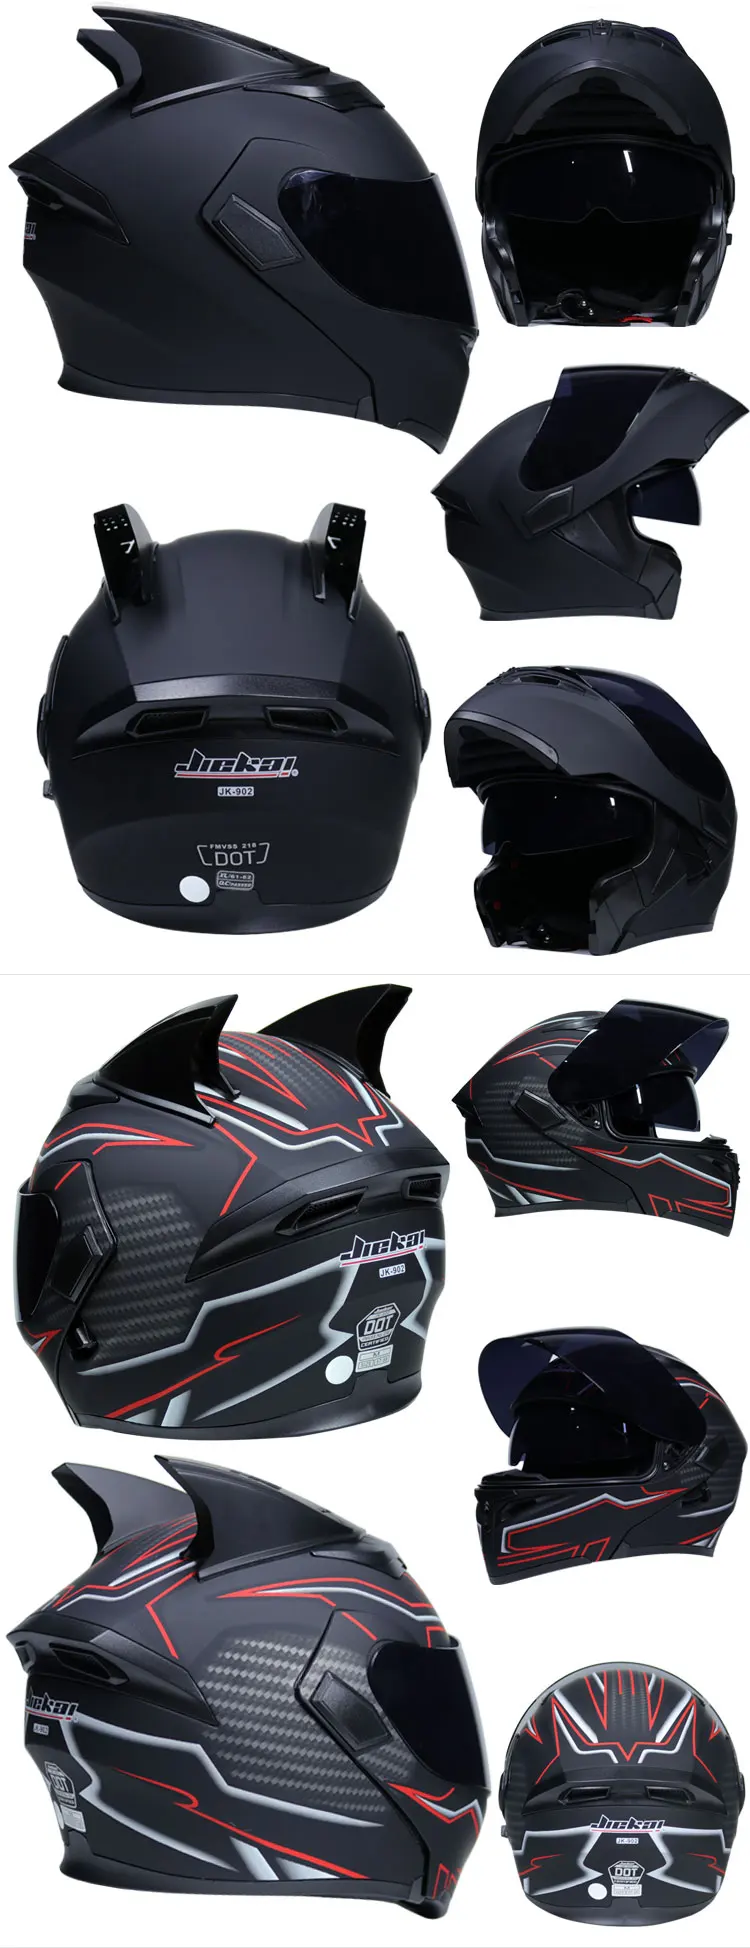 JIEKAI 902 мотоциклетный шлем для мужчин и женщин в четыре сезона, универсальный Анти-туман, полностью покрытый локомотив, предотвращающий туман шлем